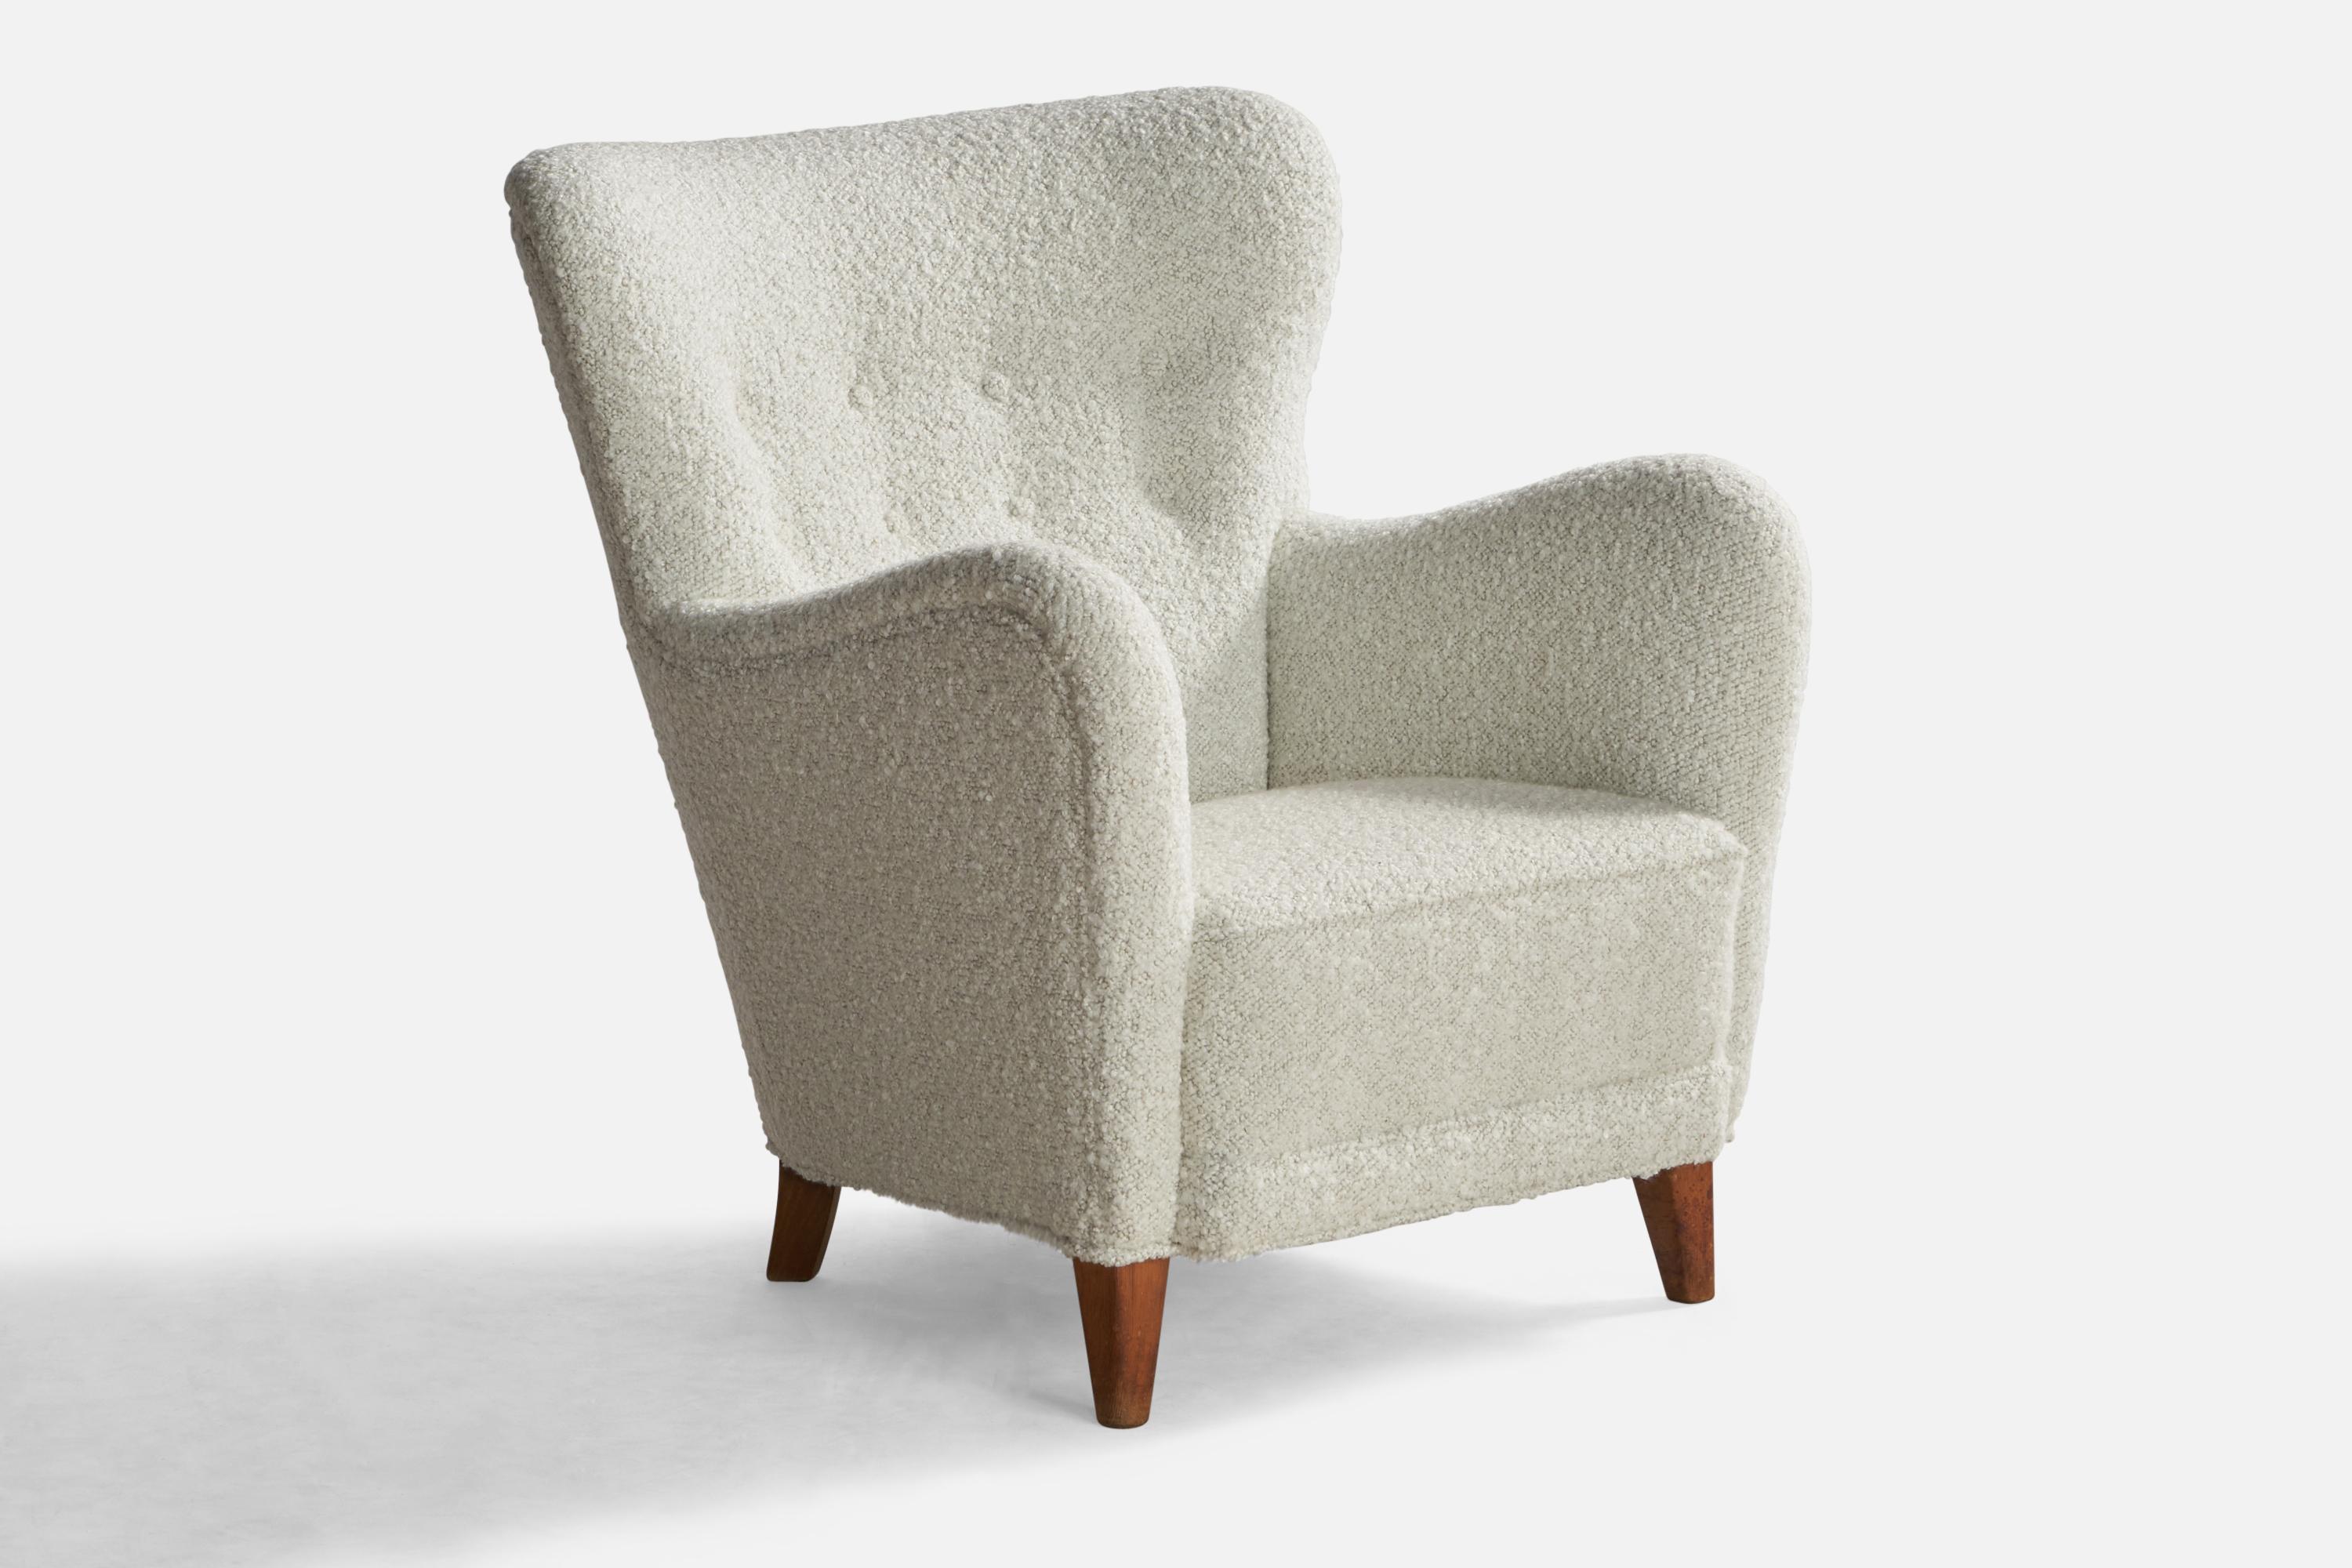 Sessel aus Holz und cremefarbenem Bouclé-Stoff, entworfen und hergestellt in Dänemark, 1940er Jahre.

Sitzhöhe: 15.7